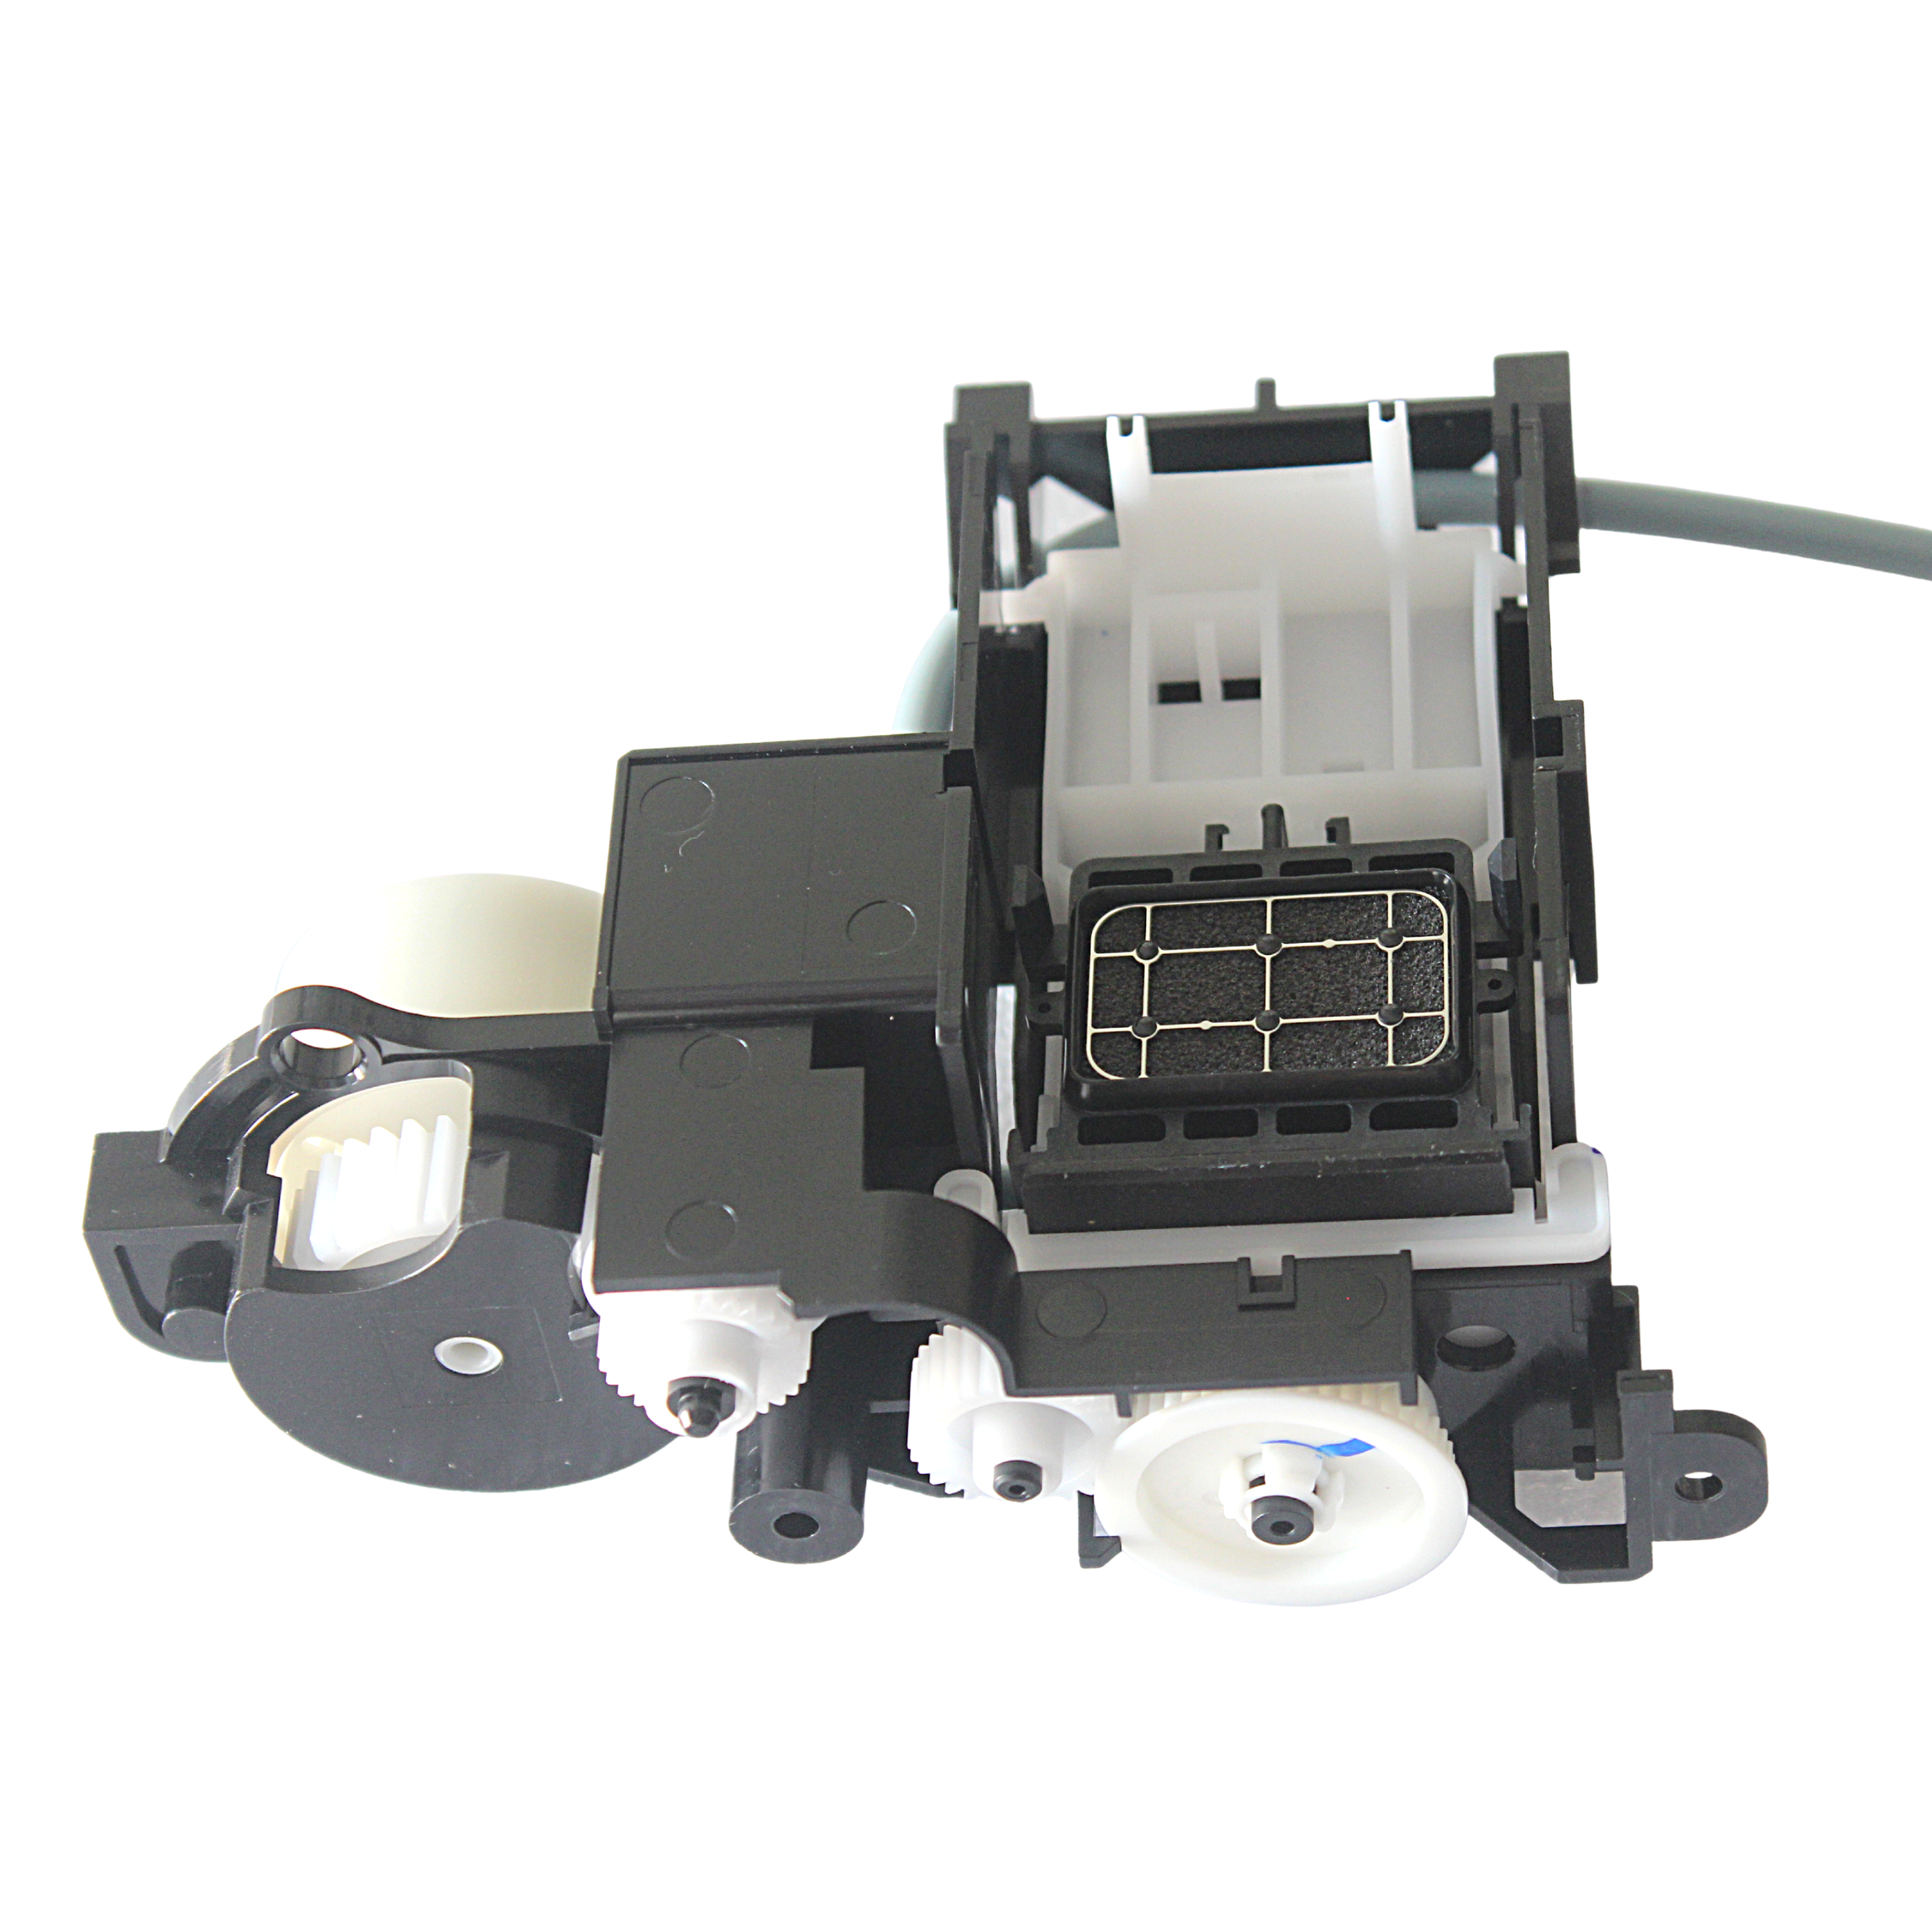 Motor de la bomba de tinta de la impresora Procolored para la impresora UV de tamaño A4